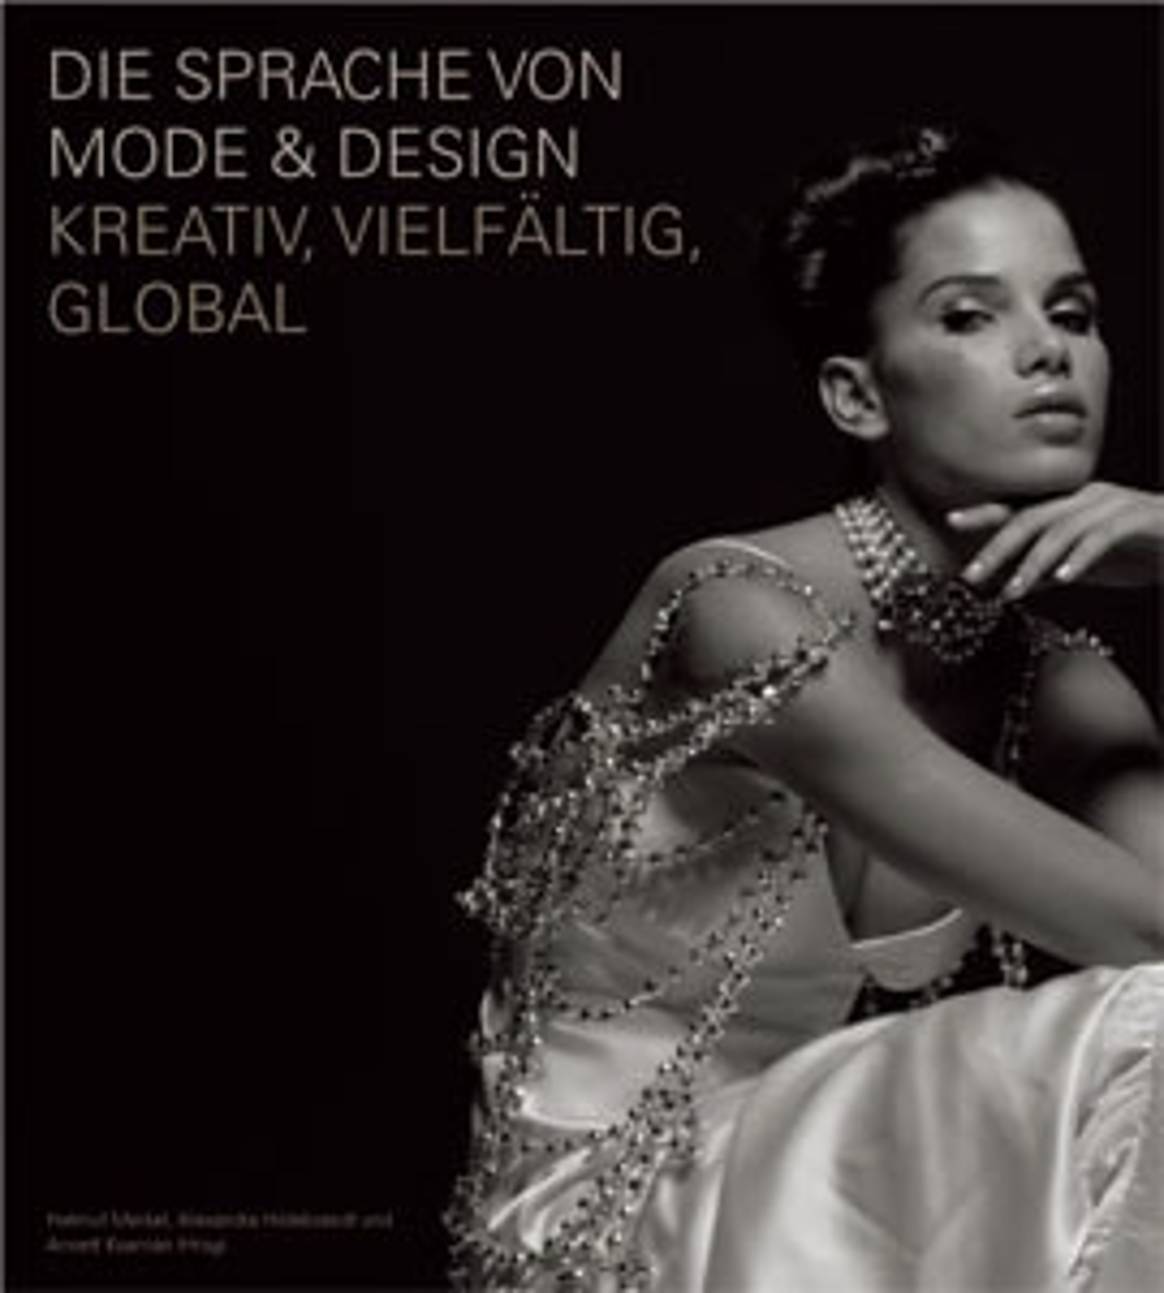 Die Sprache von Mode & Design: Kreativ, vielfältig, global